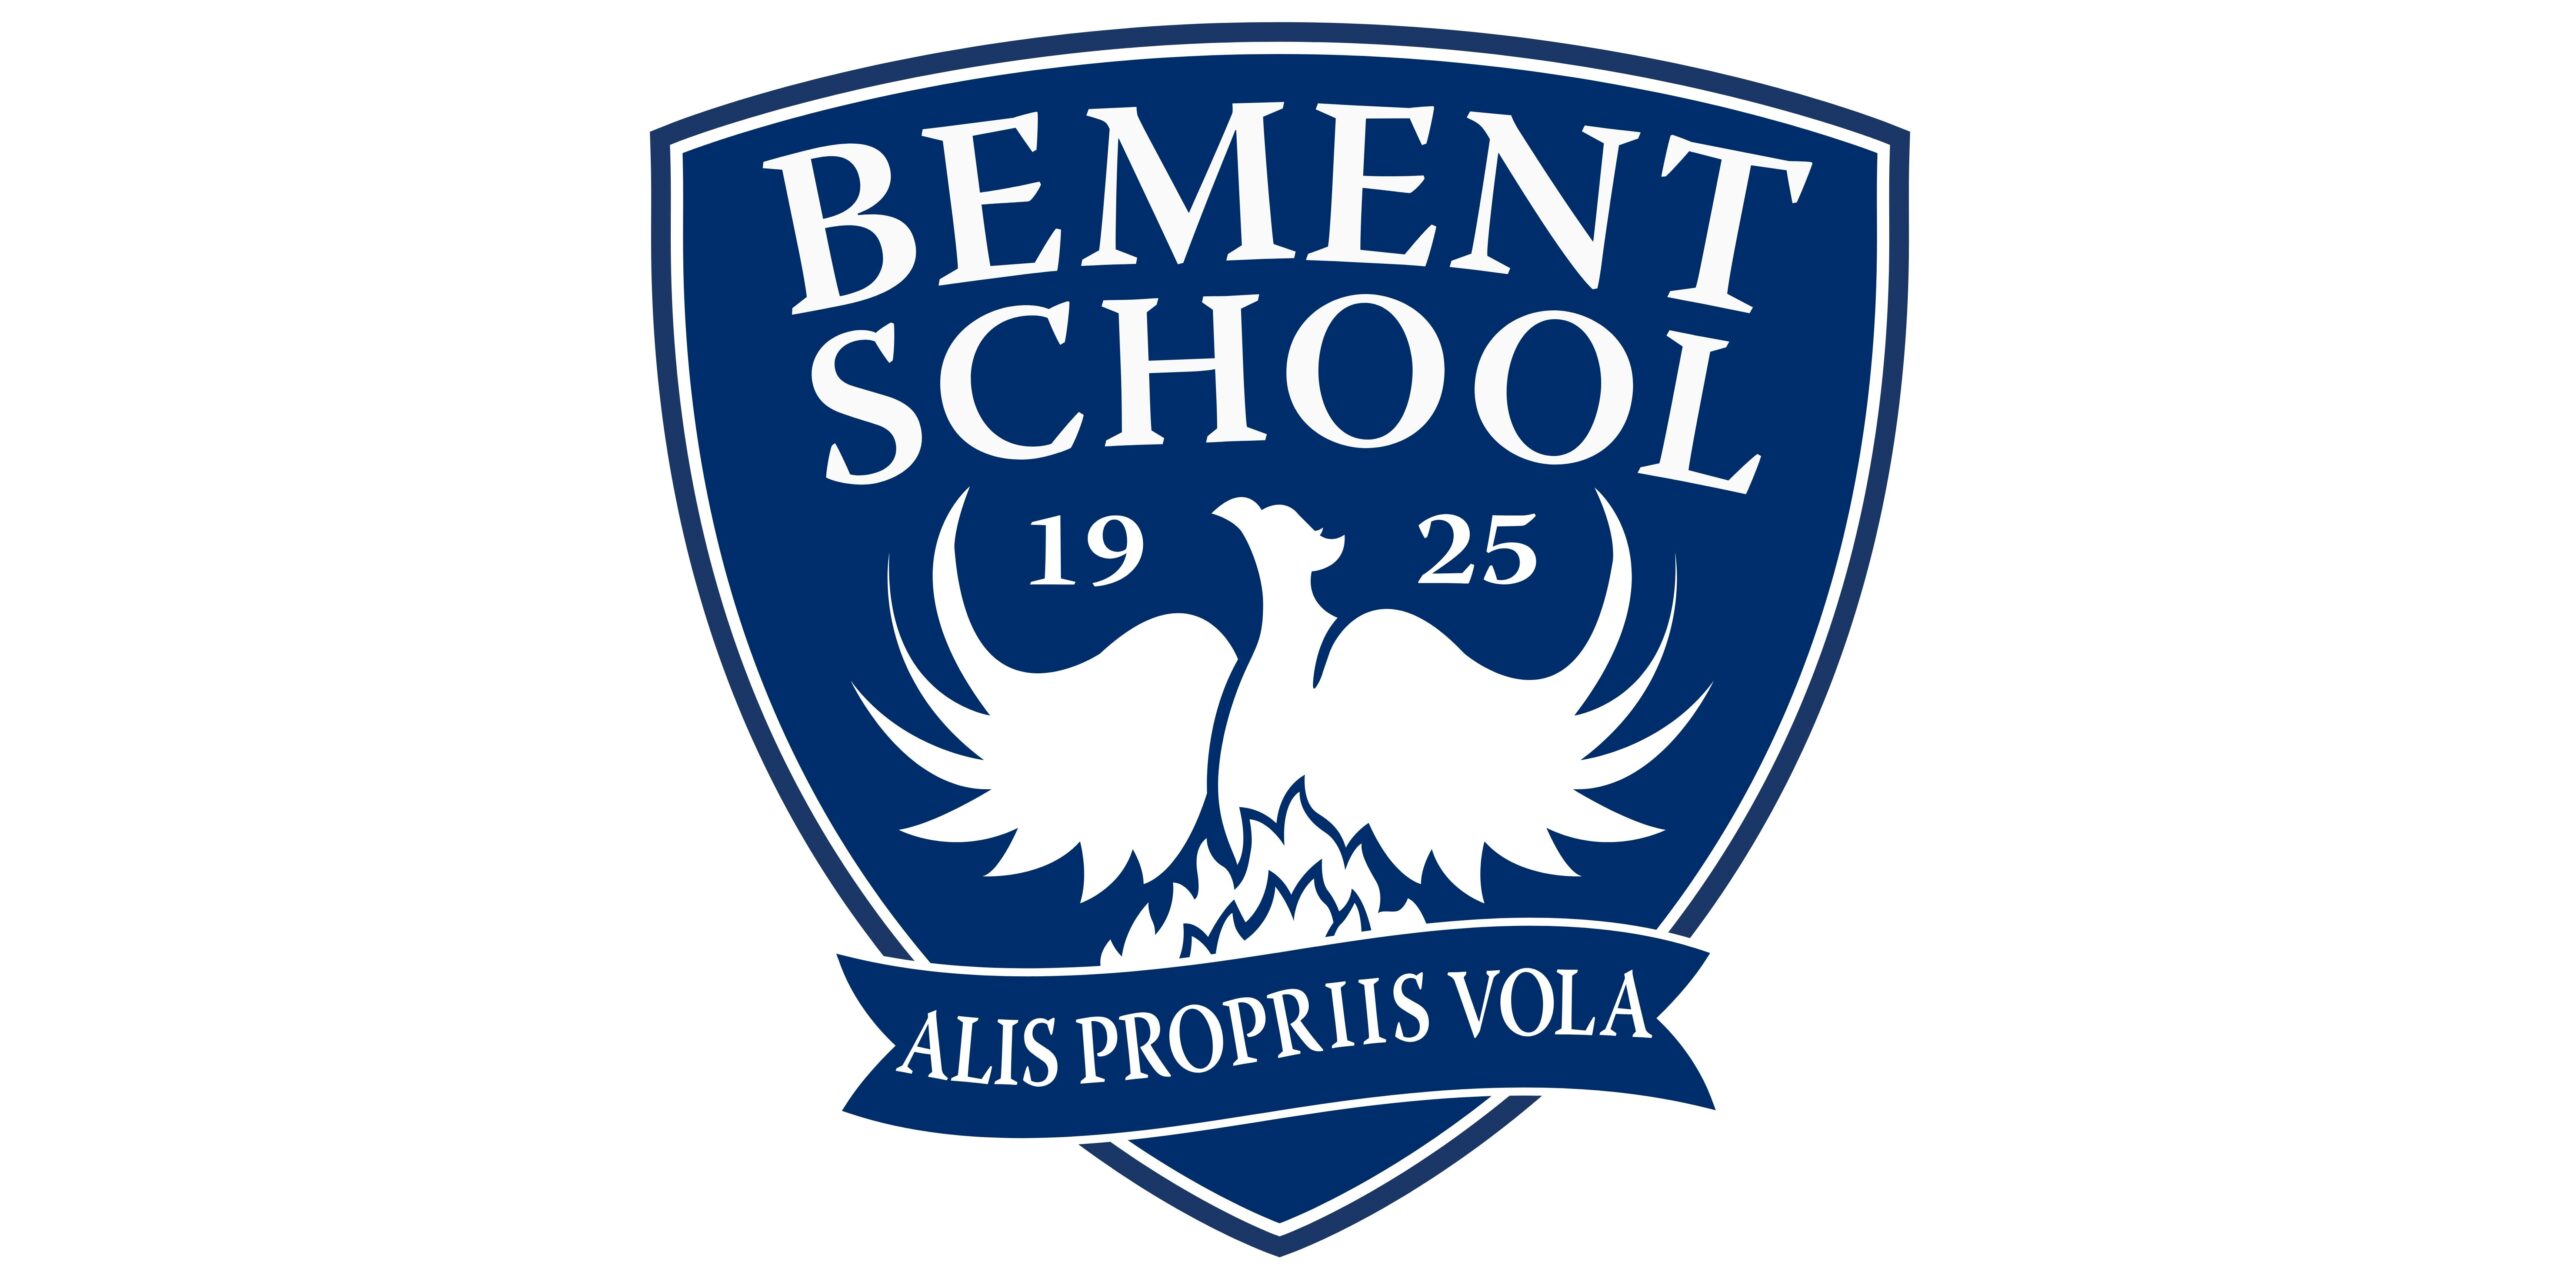 The Bement School